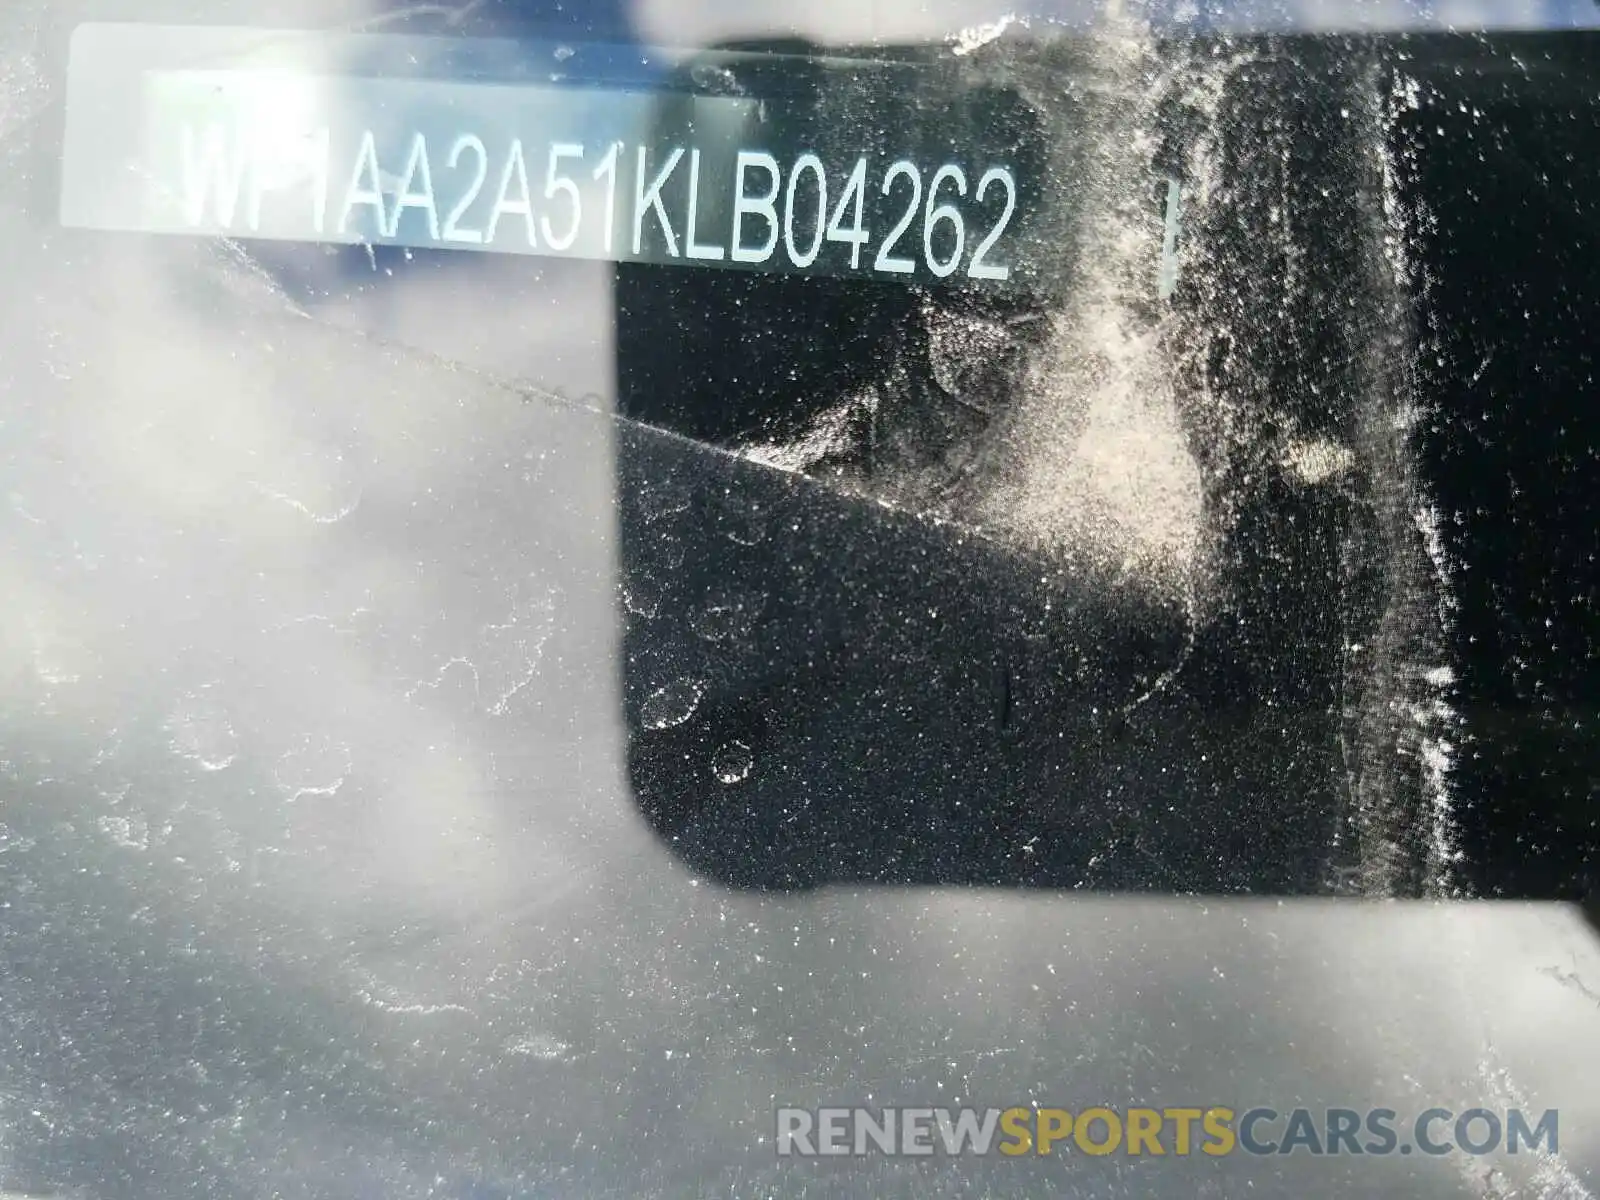 10 Photograph of a damaged car WP1AA2A51KLB04262 PORSCHE MACAN 2019